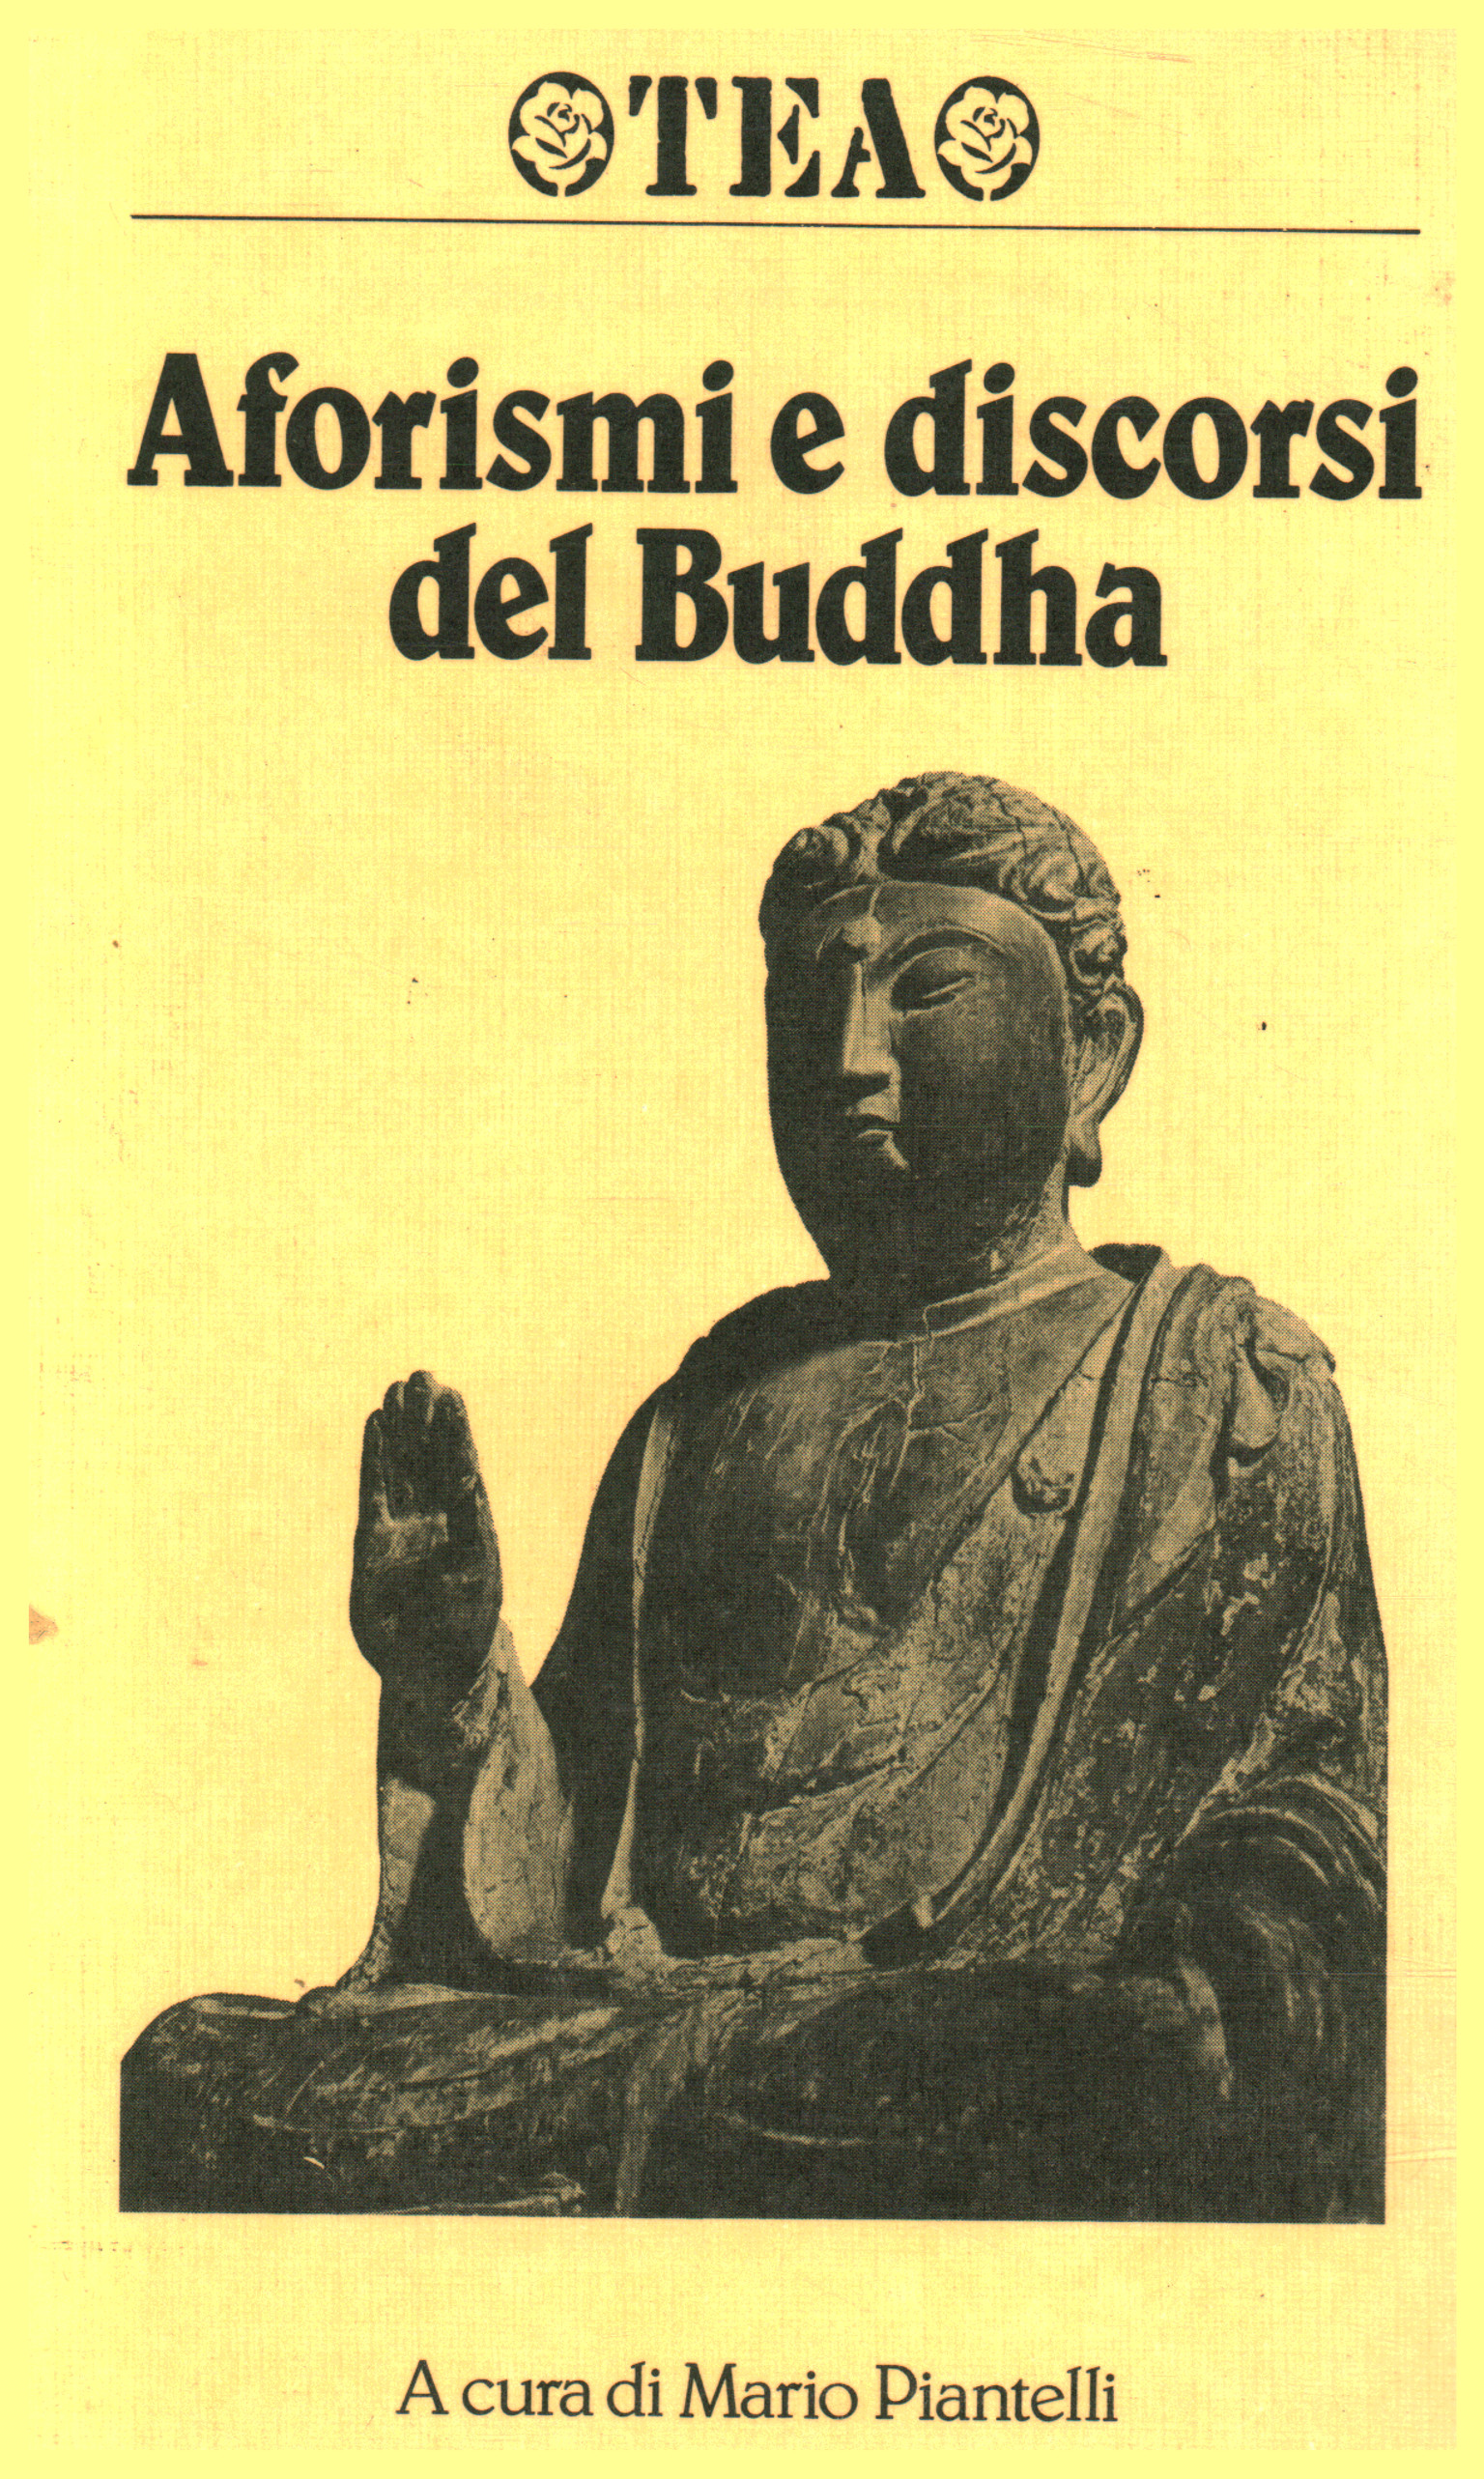 Aforismos y discursos del Buda.